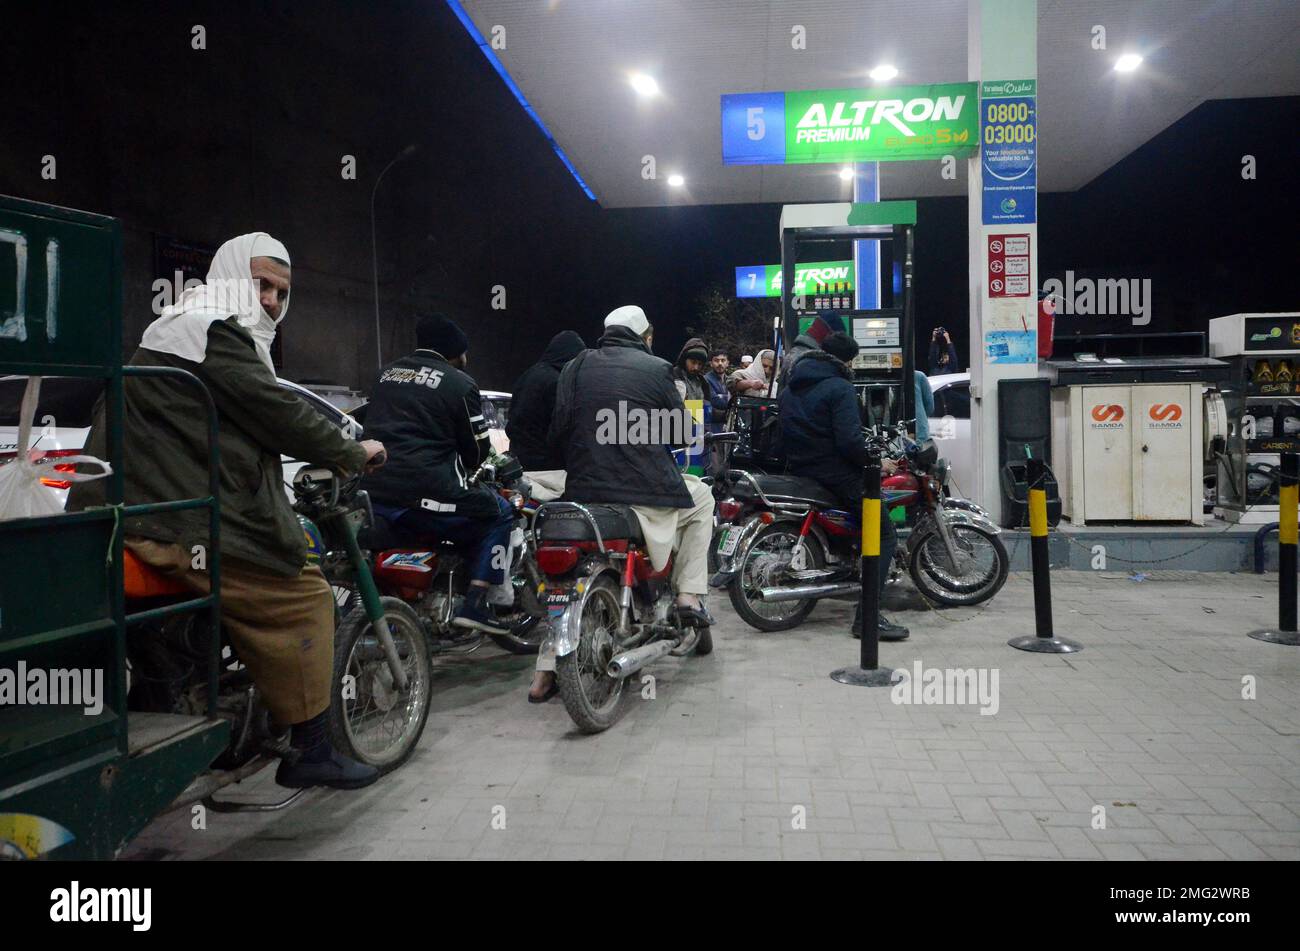 La gente espera su turno para conseguir combustible en una gasolinera, un día después de una avería eléctrica en todo el país. El lunes se presenciaron largas colas de automóviles y motocicletas en las estaciones de servicio en la mayor parte de Khyber Pakhtunkhwa, incluida la capital, tras una reducción en los suministros por parte de las empresas comercializadoras de petróleo. Después de la crisis del petróleo, hay largas colas de vehículos en las gasolineras de G.T Road. Gran parte de Pakistán se quedó sin electricidad el lunes debido a que una medida de ahorro de energía del gobierno fue contraproducente. La interrupción del servicio propagó el pánico y suscitó preguntas sobre la ha del gobierno con escasez de efectivo Foto de stock